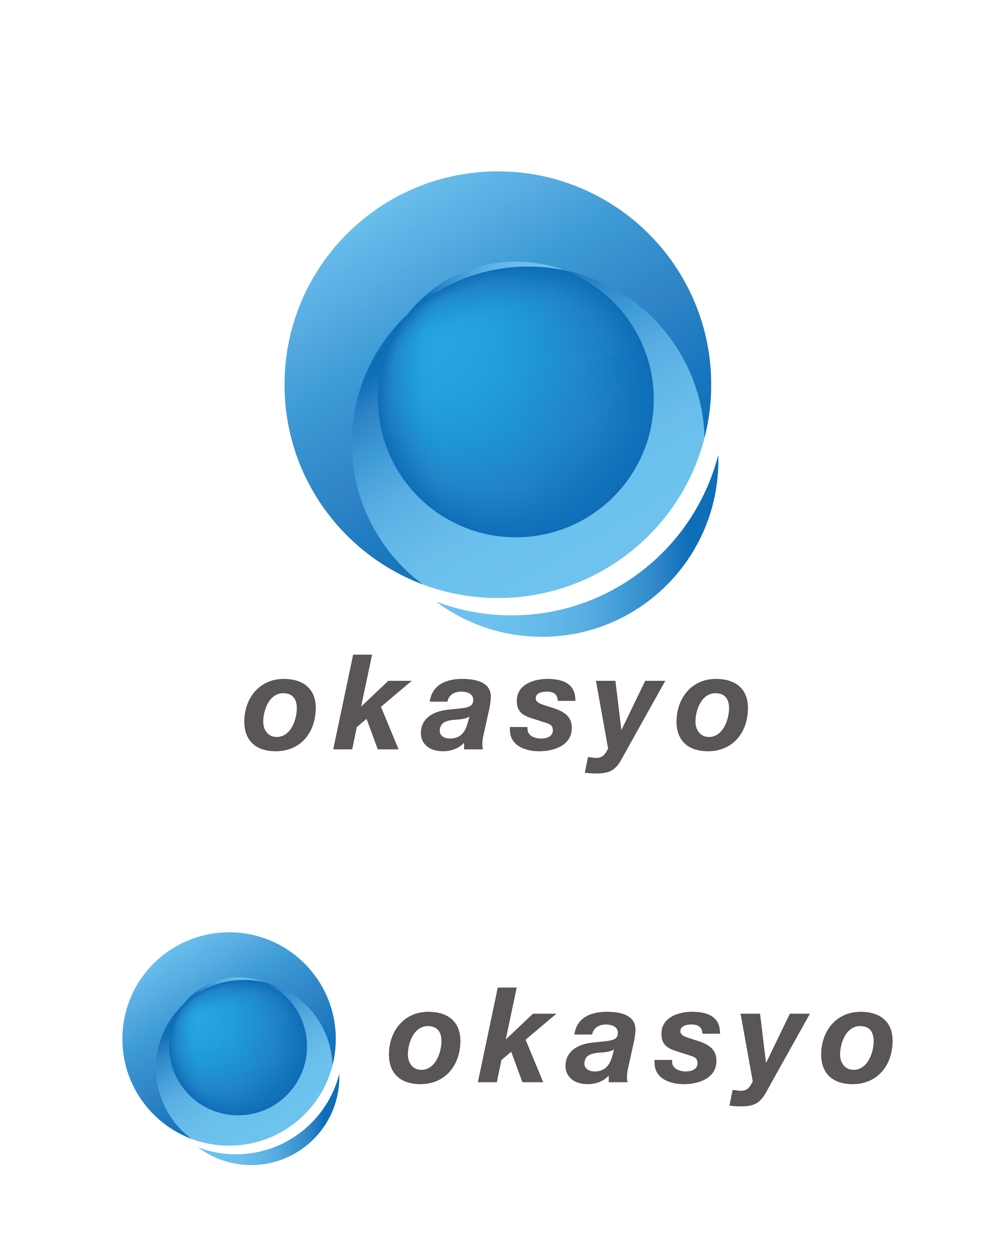 okasyo-001.jpg